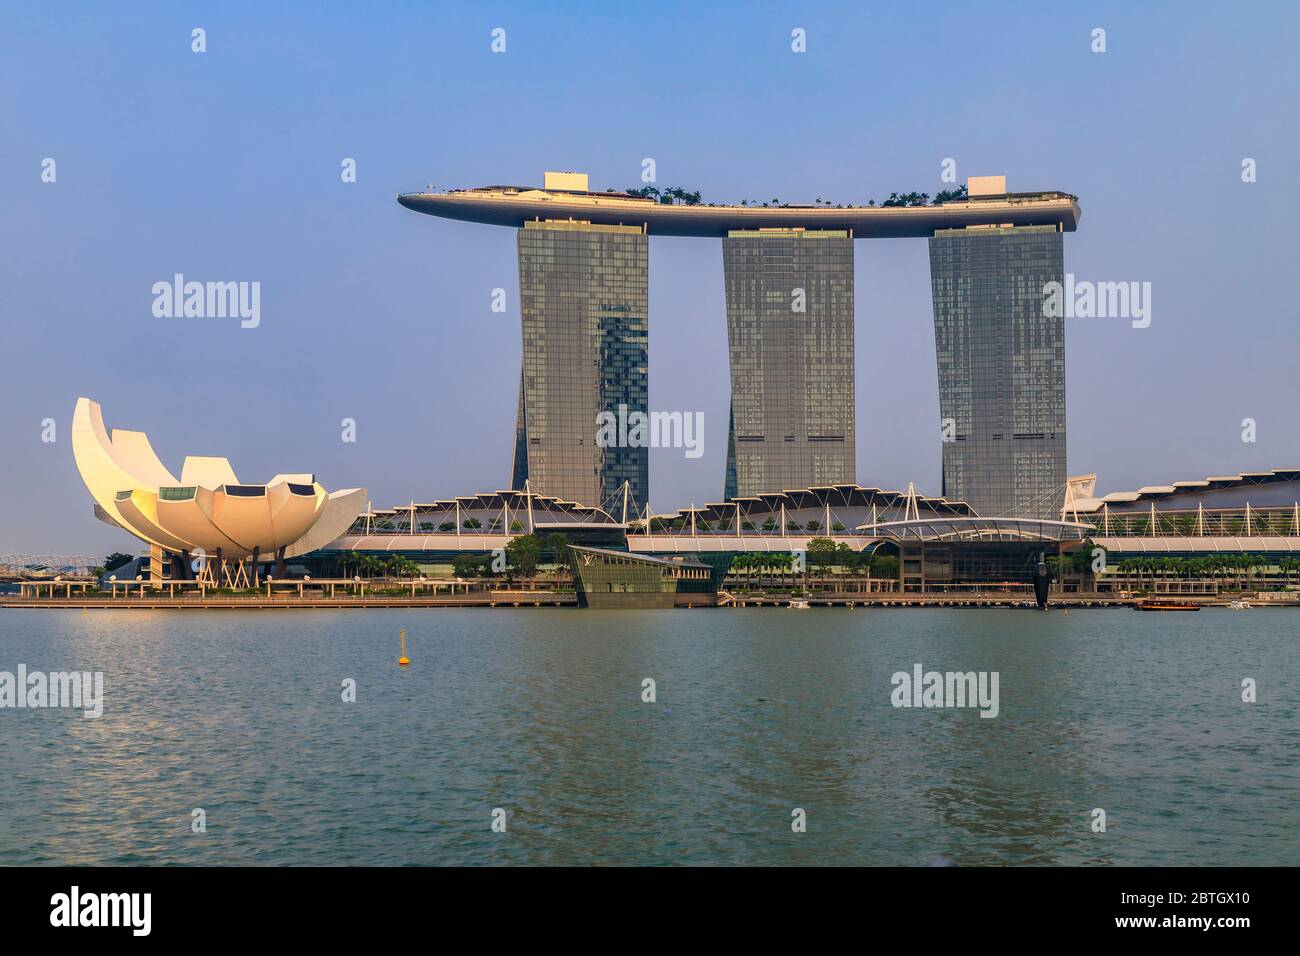 Singapour - 9 septembre 2019 : célèbre hôtel de luxe et casino Marina Bay Sands à surf avec le célèbre musée ArtScience en forme de fleur avant le coucher du soleil Banque D'Images